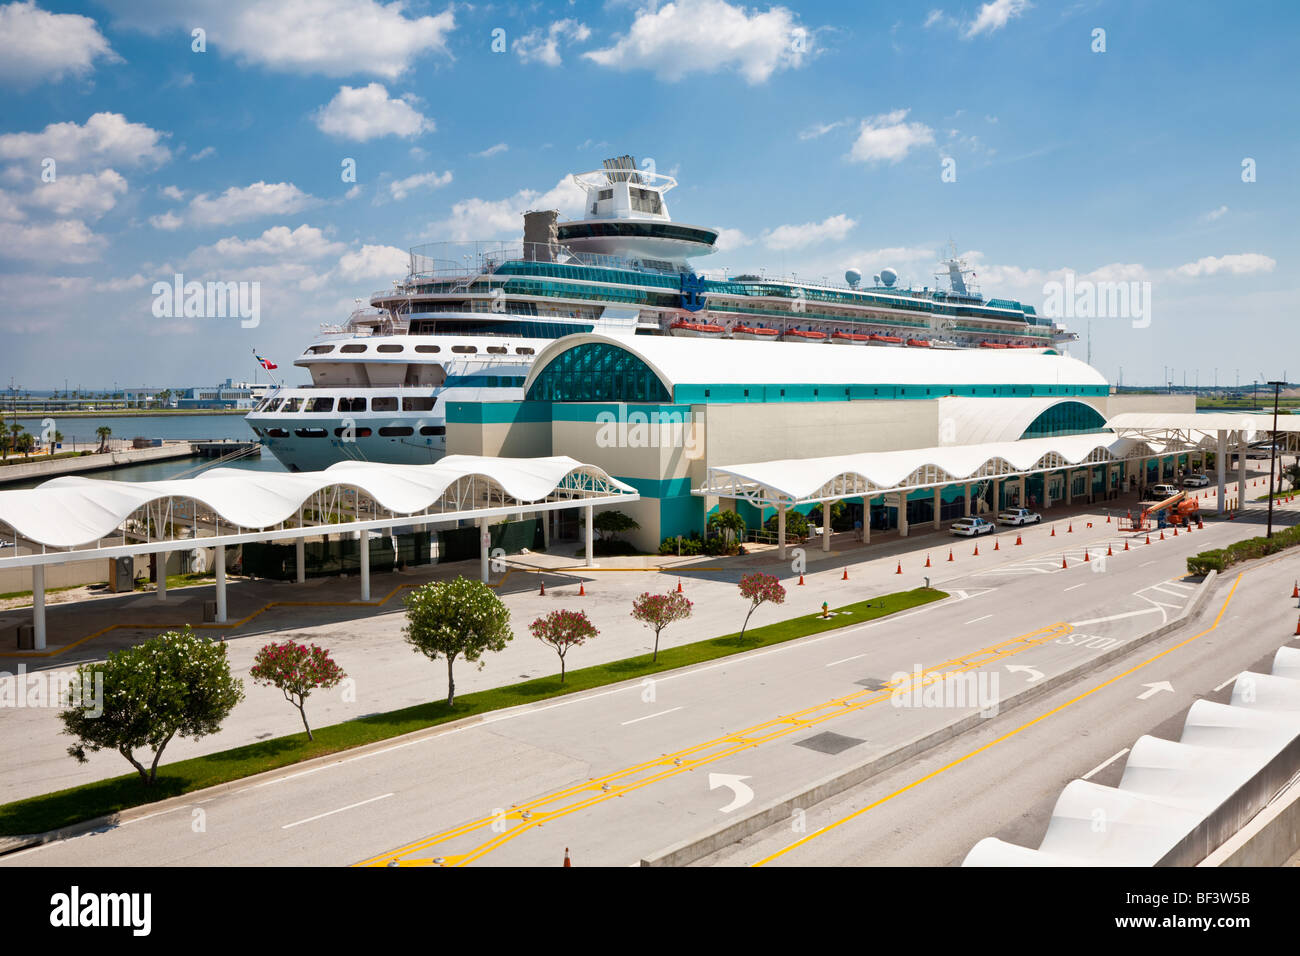 Cape Canaveral, FL - Agosto 2008 - Royal Caribbean Cruise Ship sovrano dei Mari al cruise terminal Foto Stock